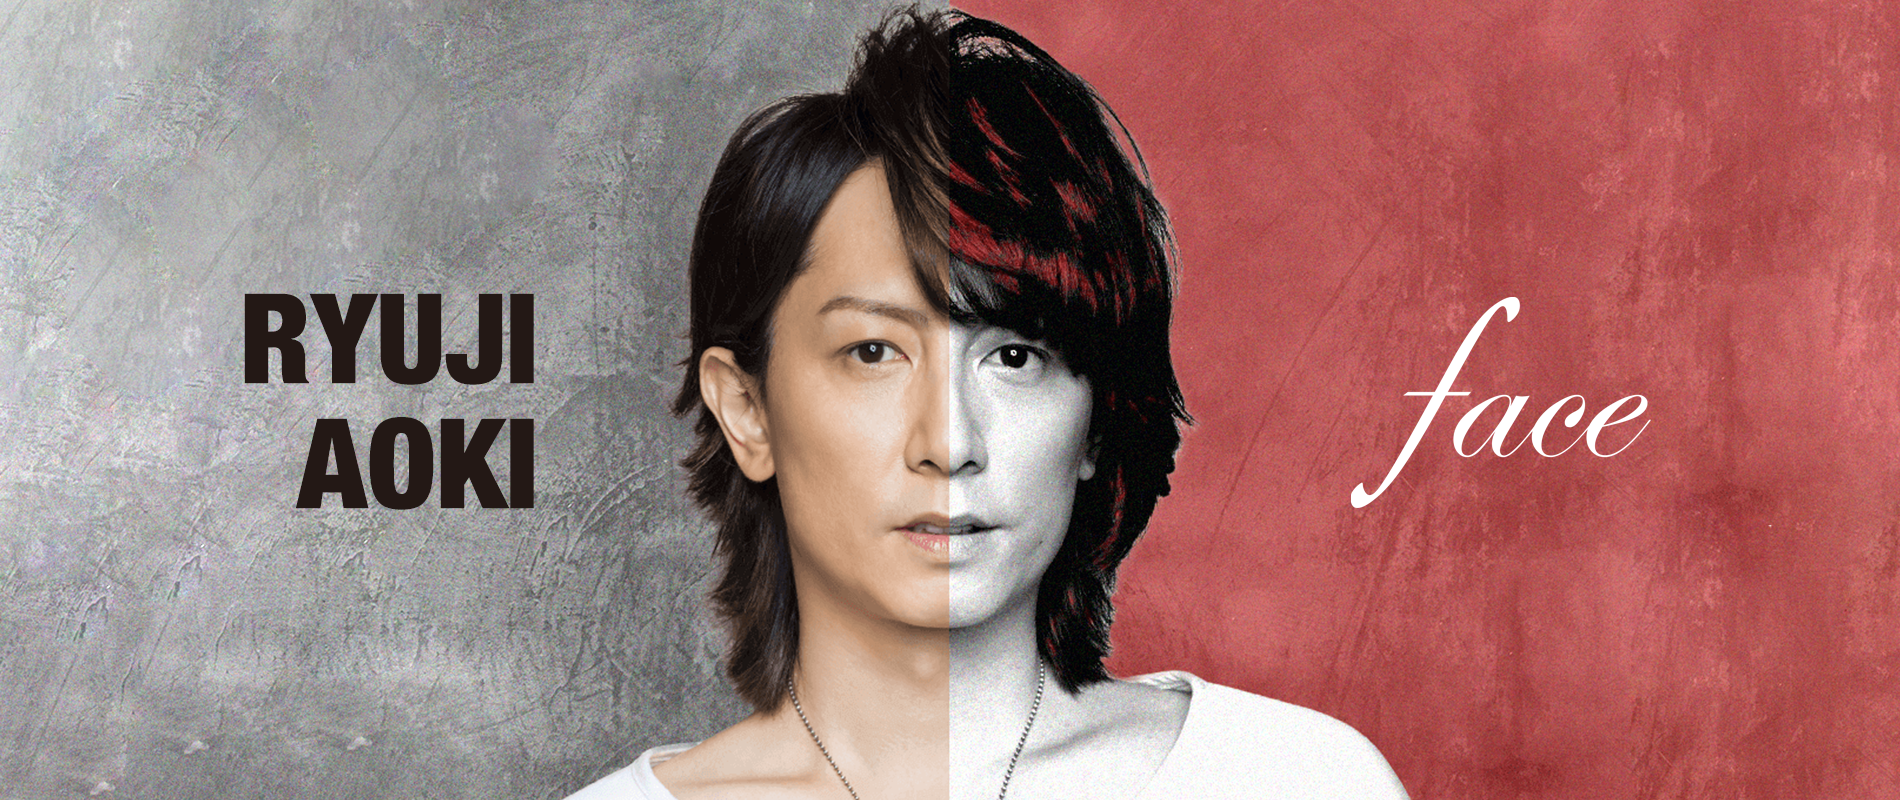 Ryuji Aoki / Face Official Site | Ryuji Aoki / Face Official Site